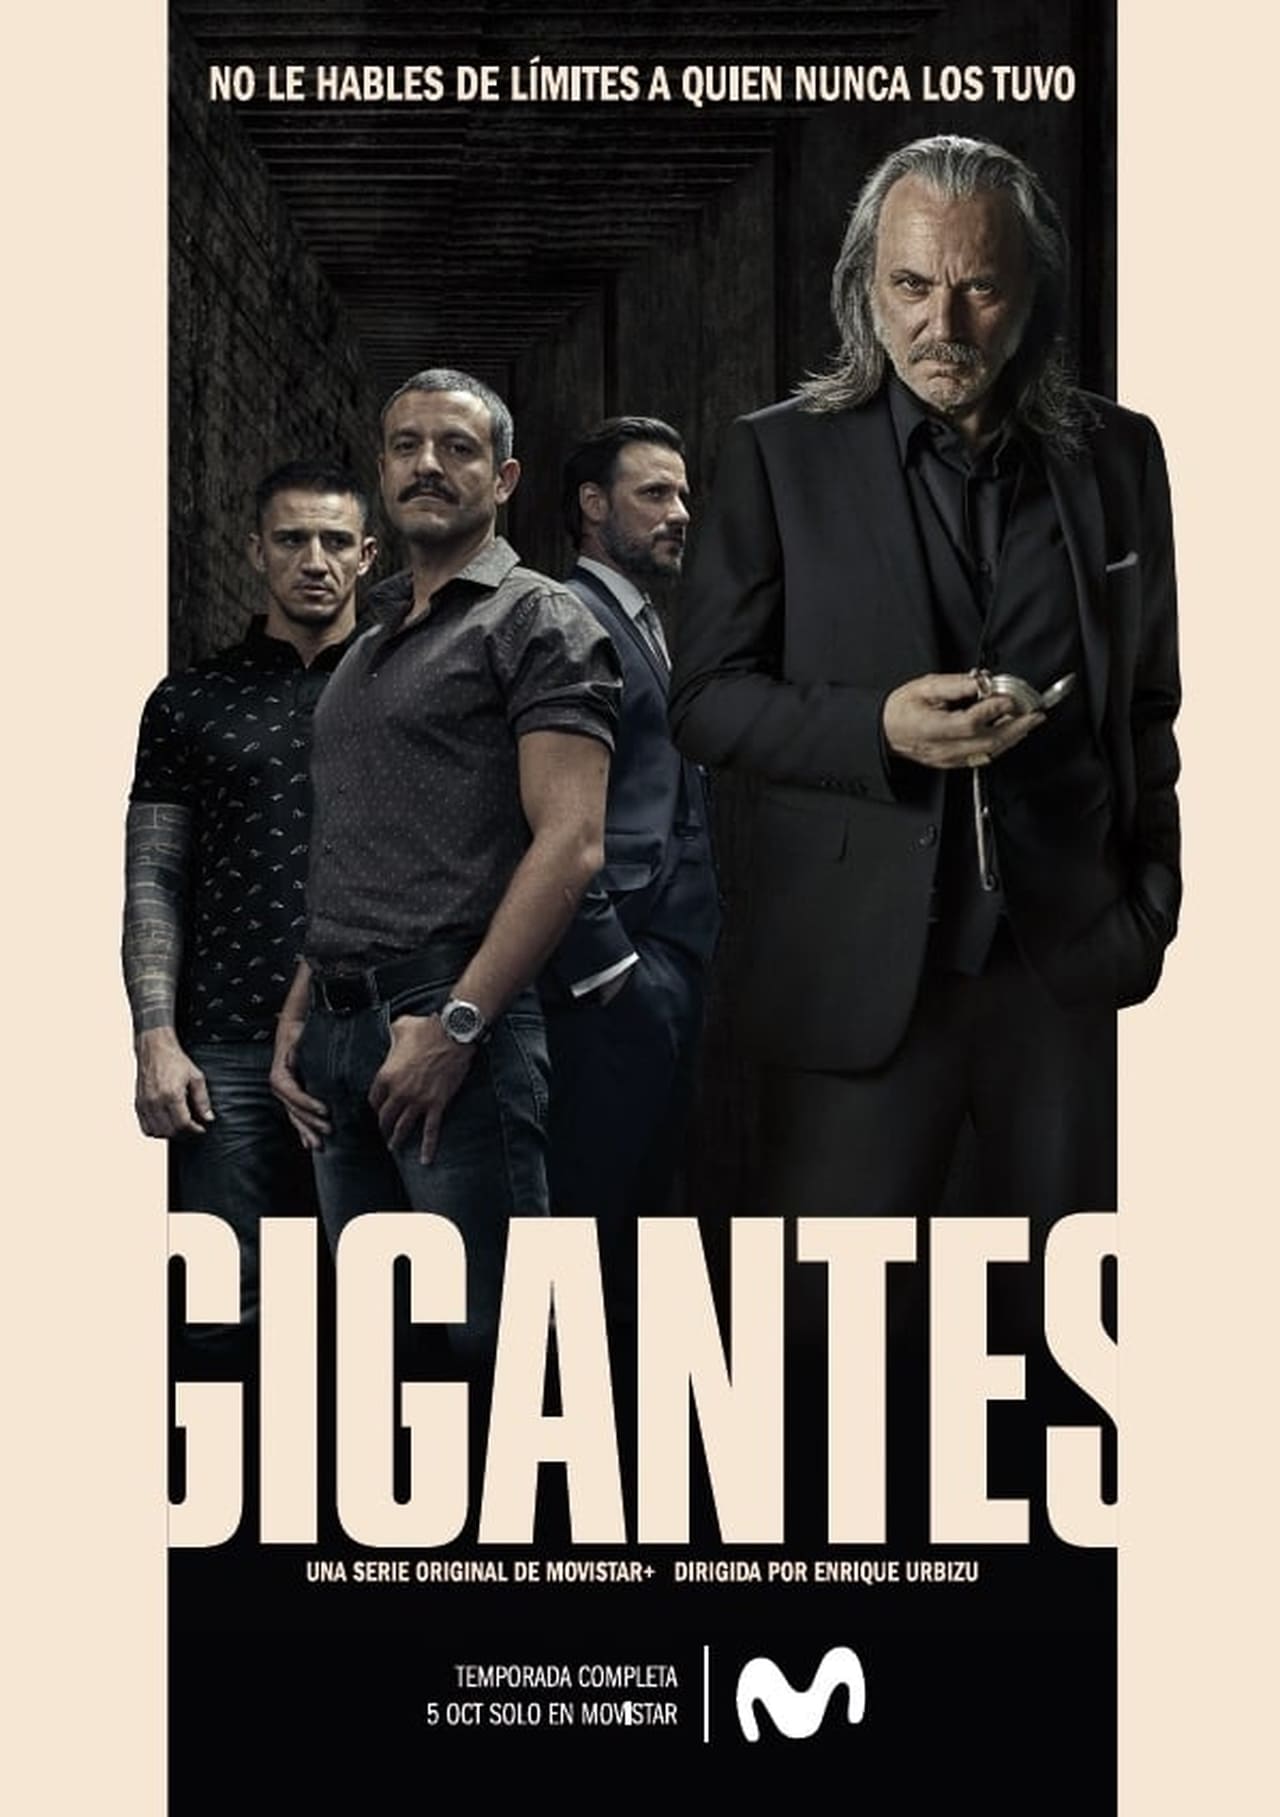 Gigantes Season 1